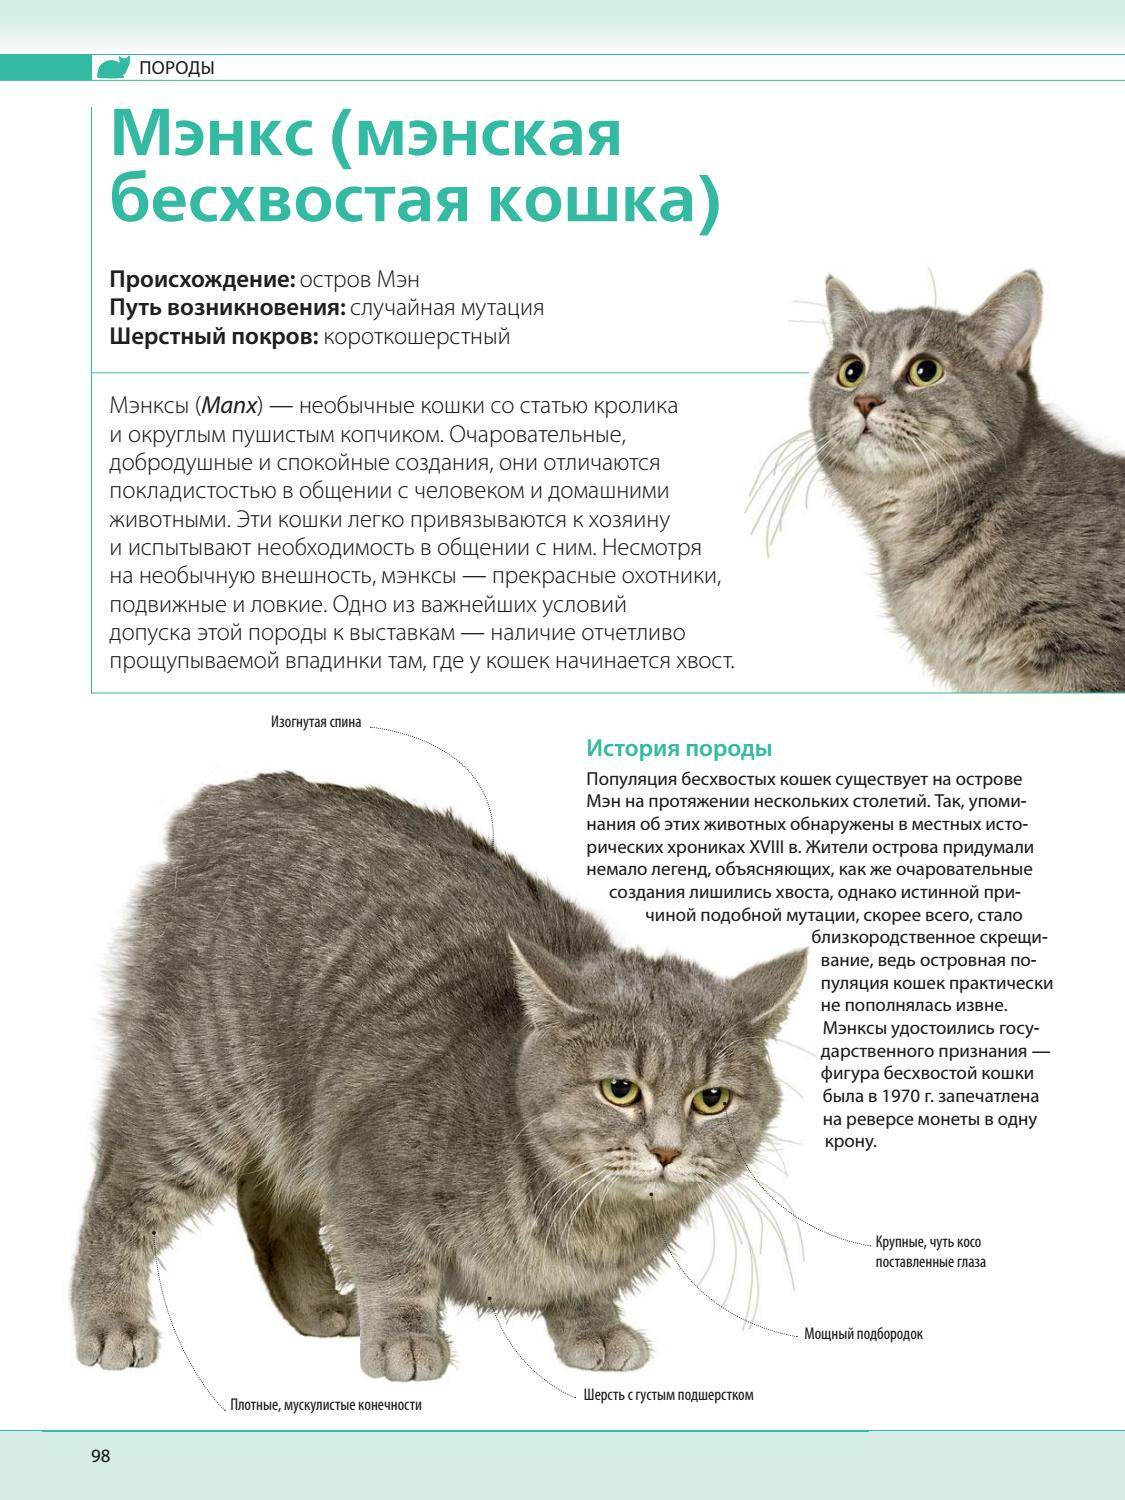 Порода кошек нибелунг — обзор породы, нюансы характера и советы по уходу за кошкой (125 фото)